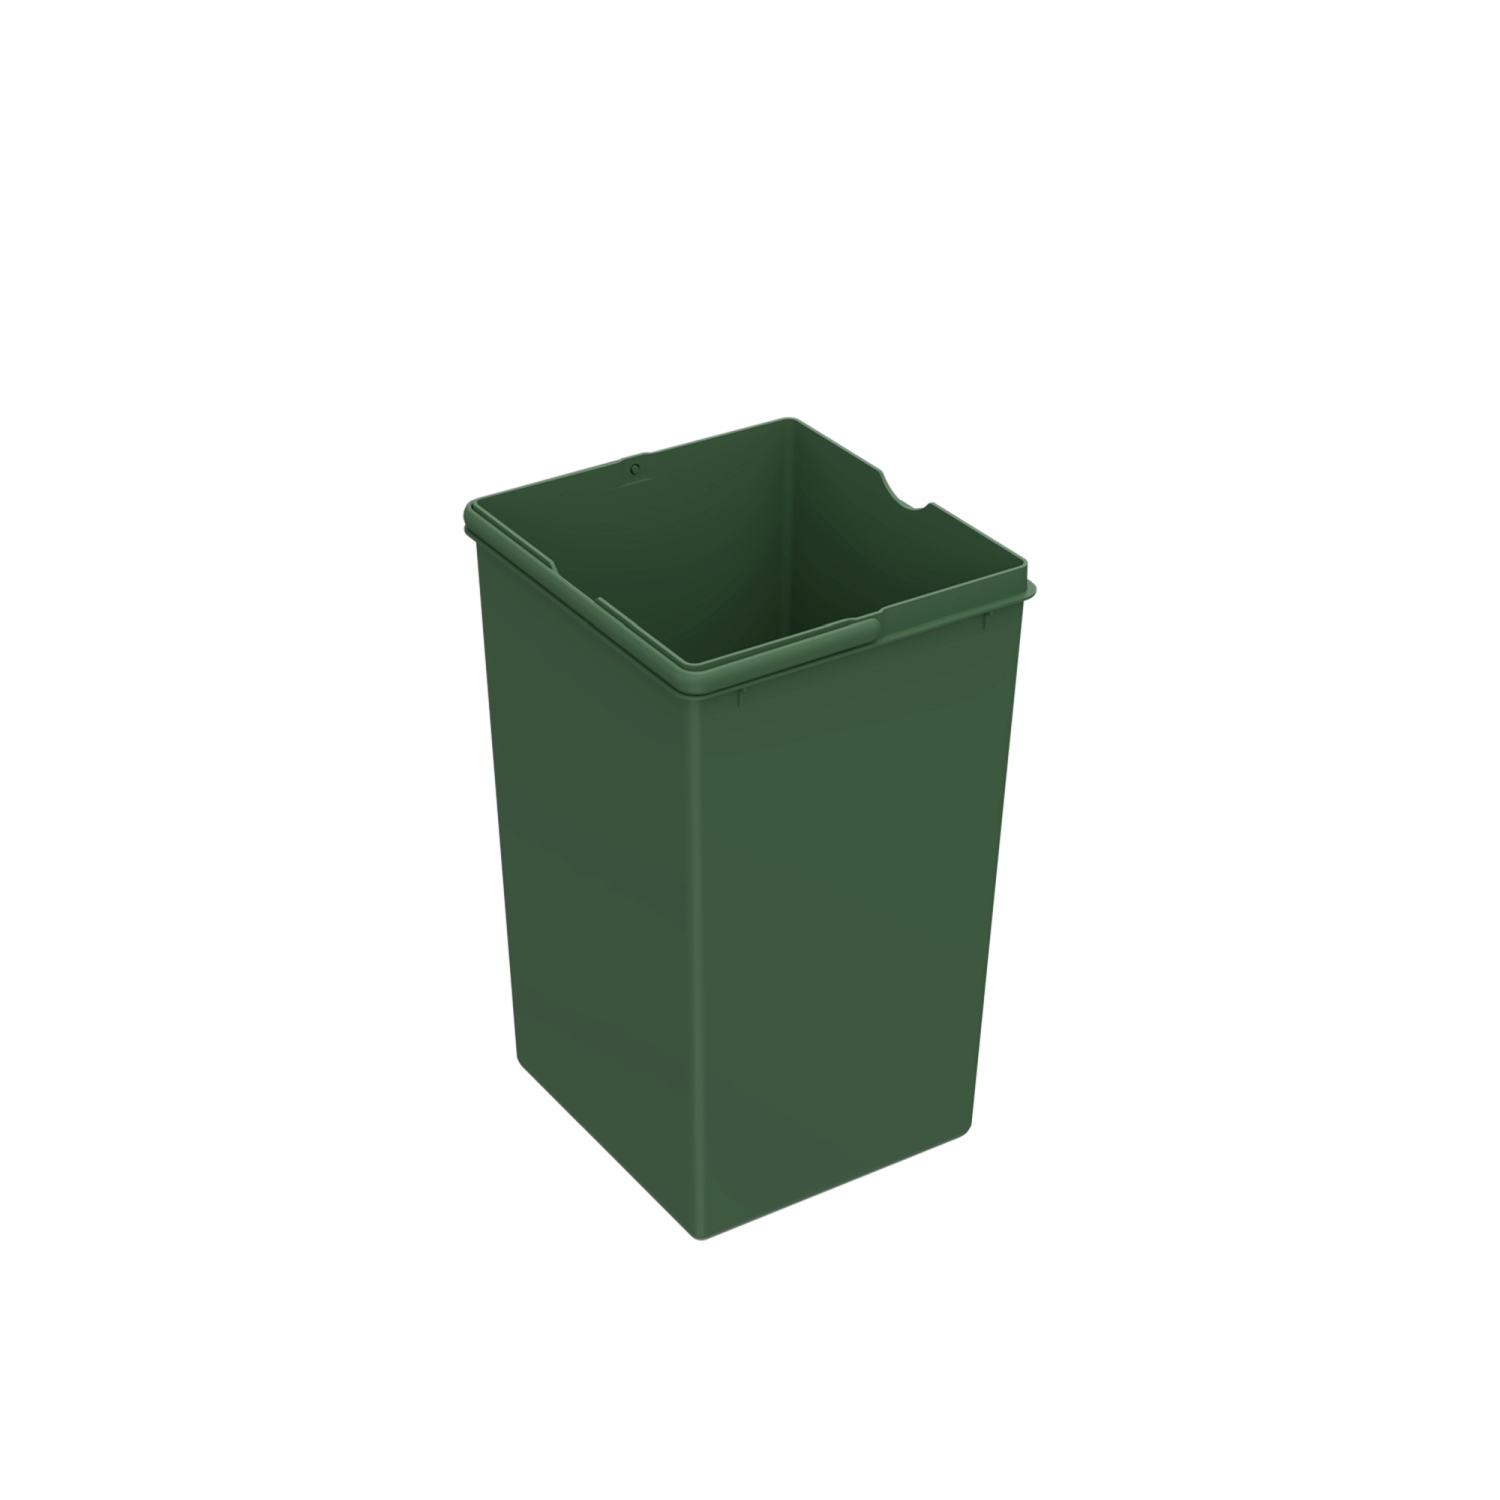 HETTICH Bin.it Basic II, 15 l, Kunststoff grün, 210 x 220 x 350 mm, 9136186